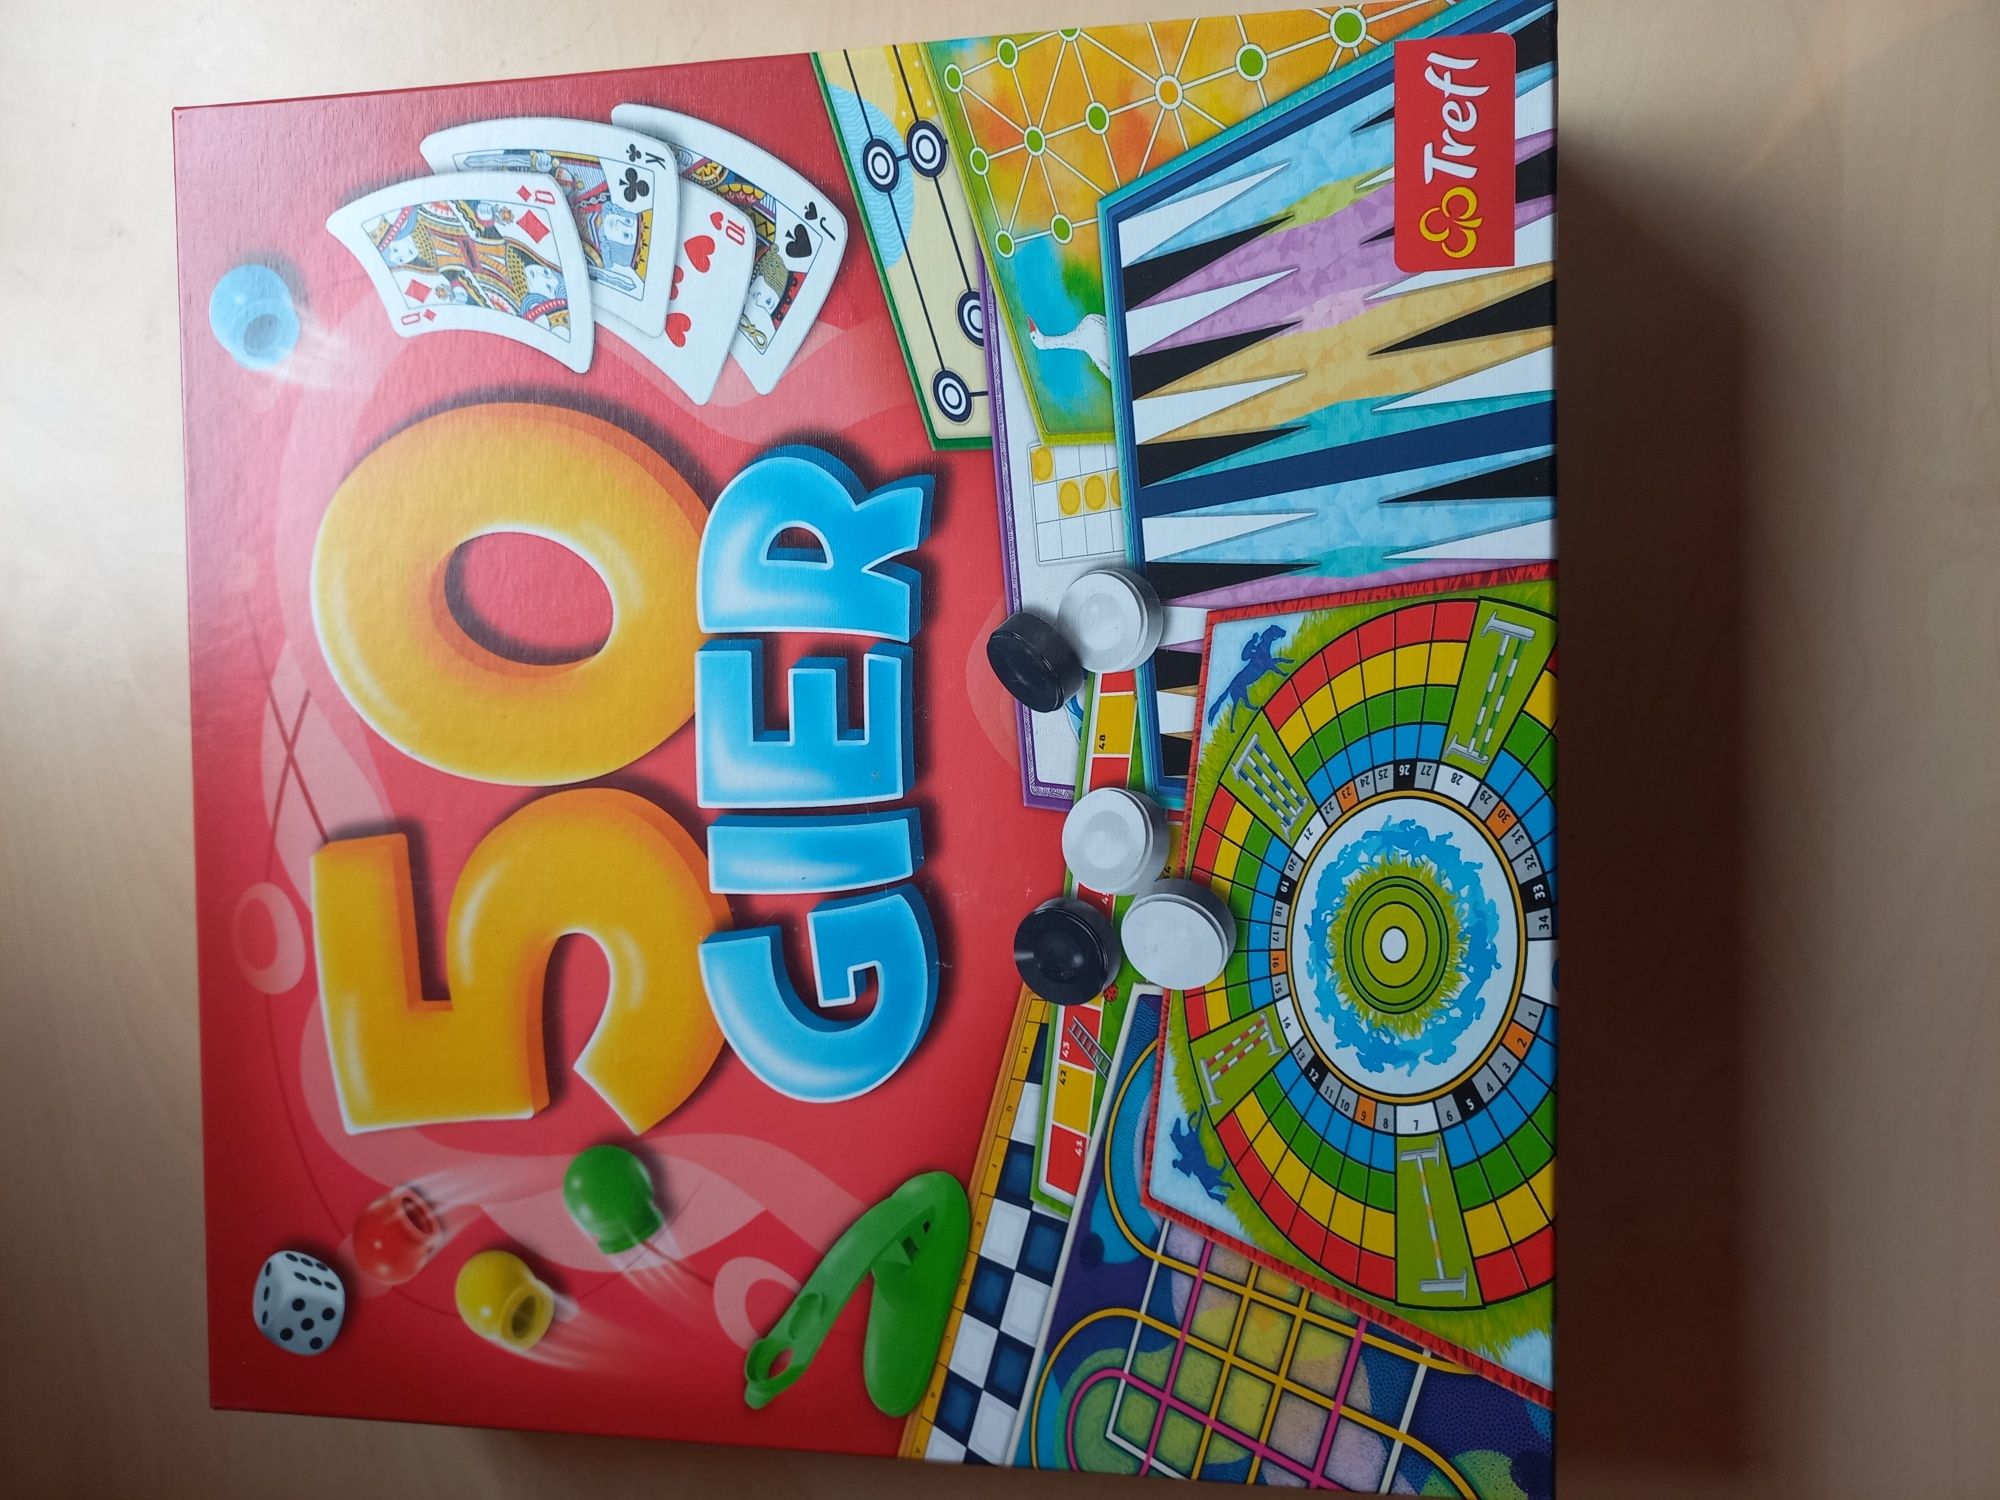 50 gier NOWA kalejdoskop gier Trefl gra edukacyjna dla dzieci